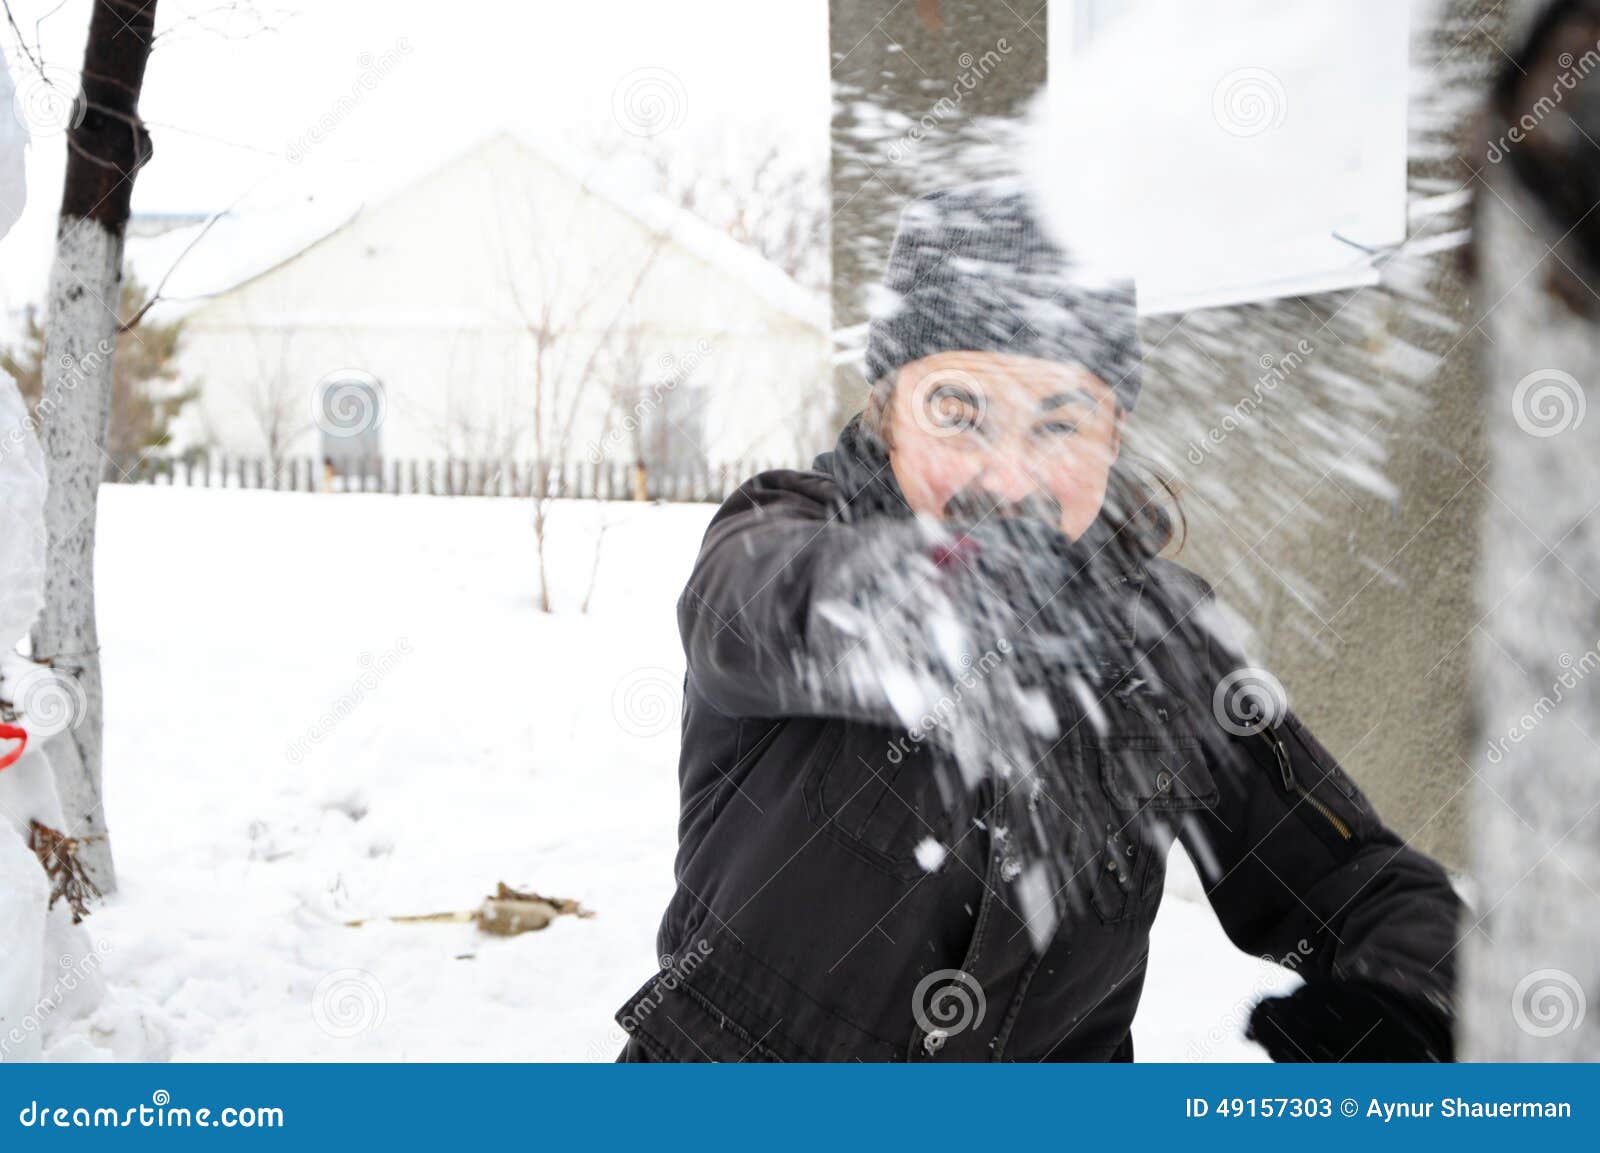 Дед кидать. Человек кидает снежок. Человек кидает снег. Бросание снежков. Мужчина кидает снежок-фото.